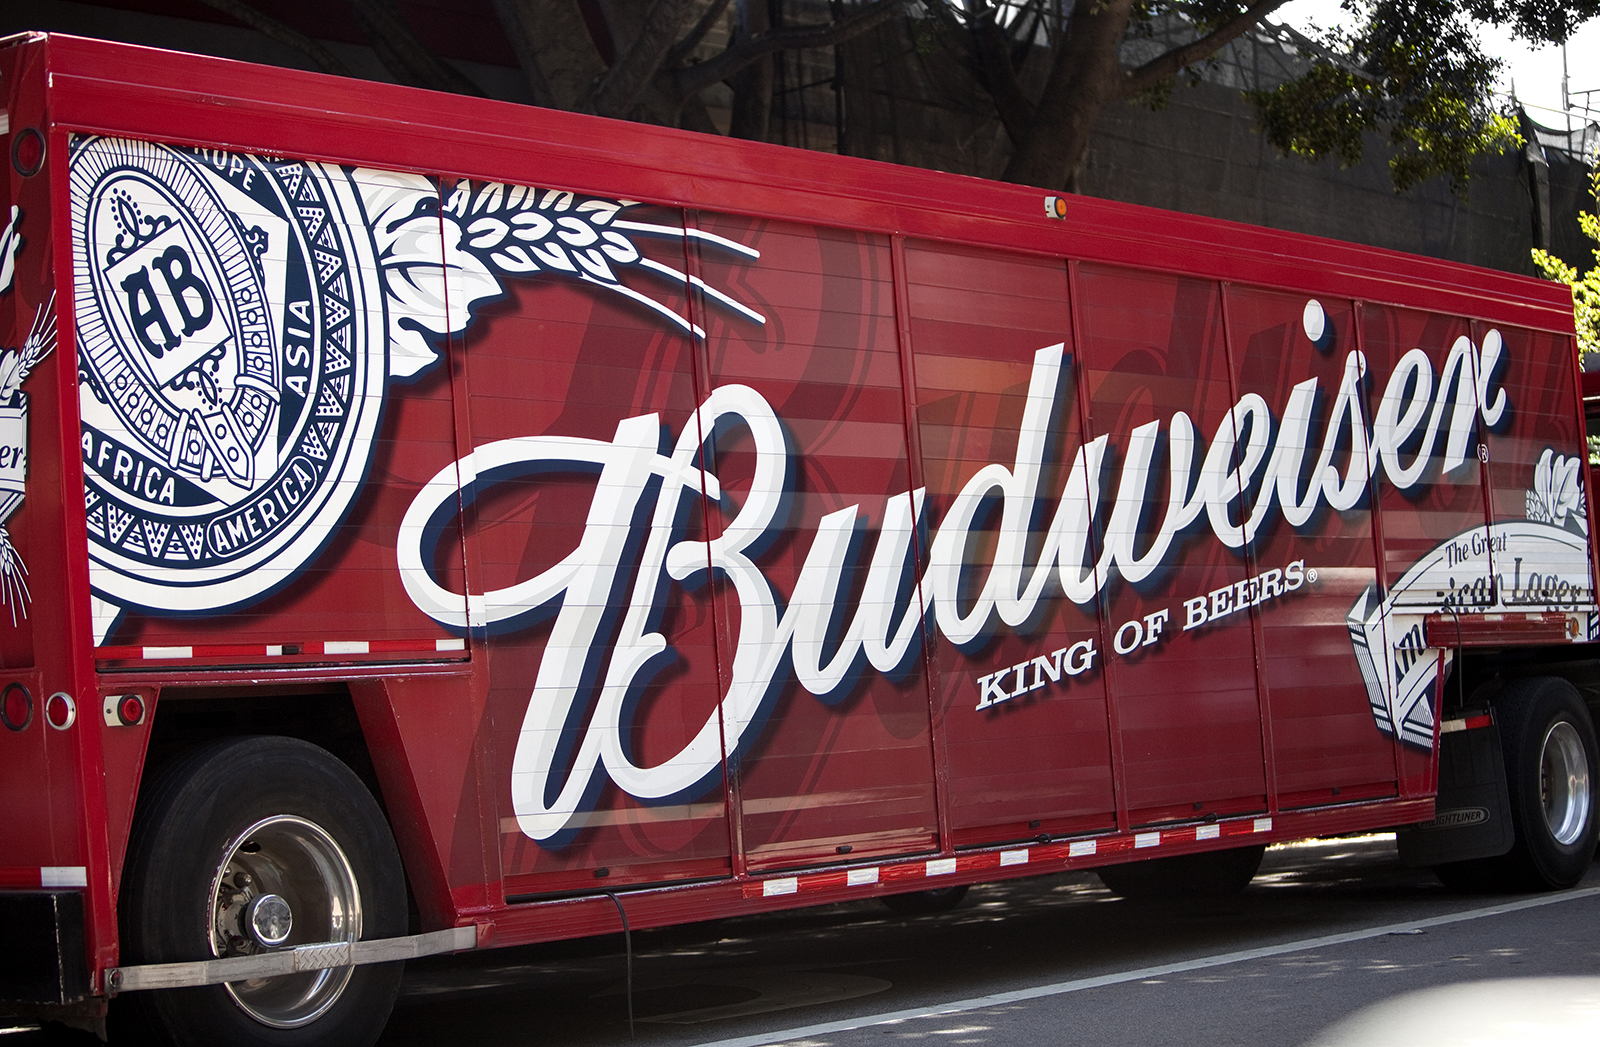 Budweiser truck